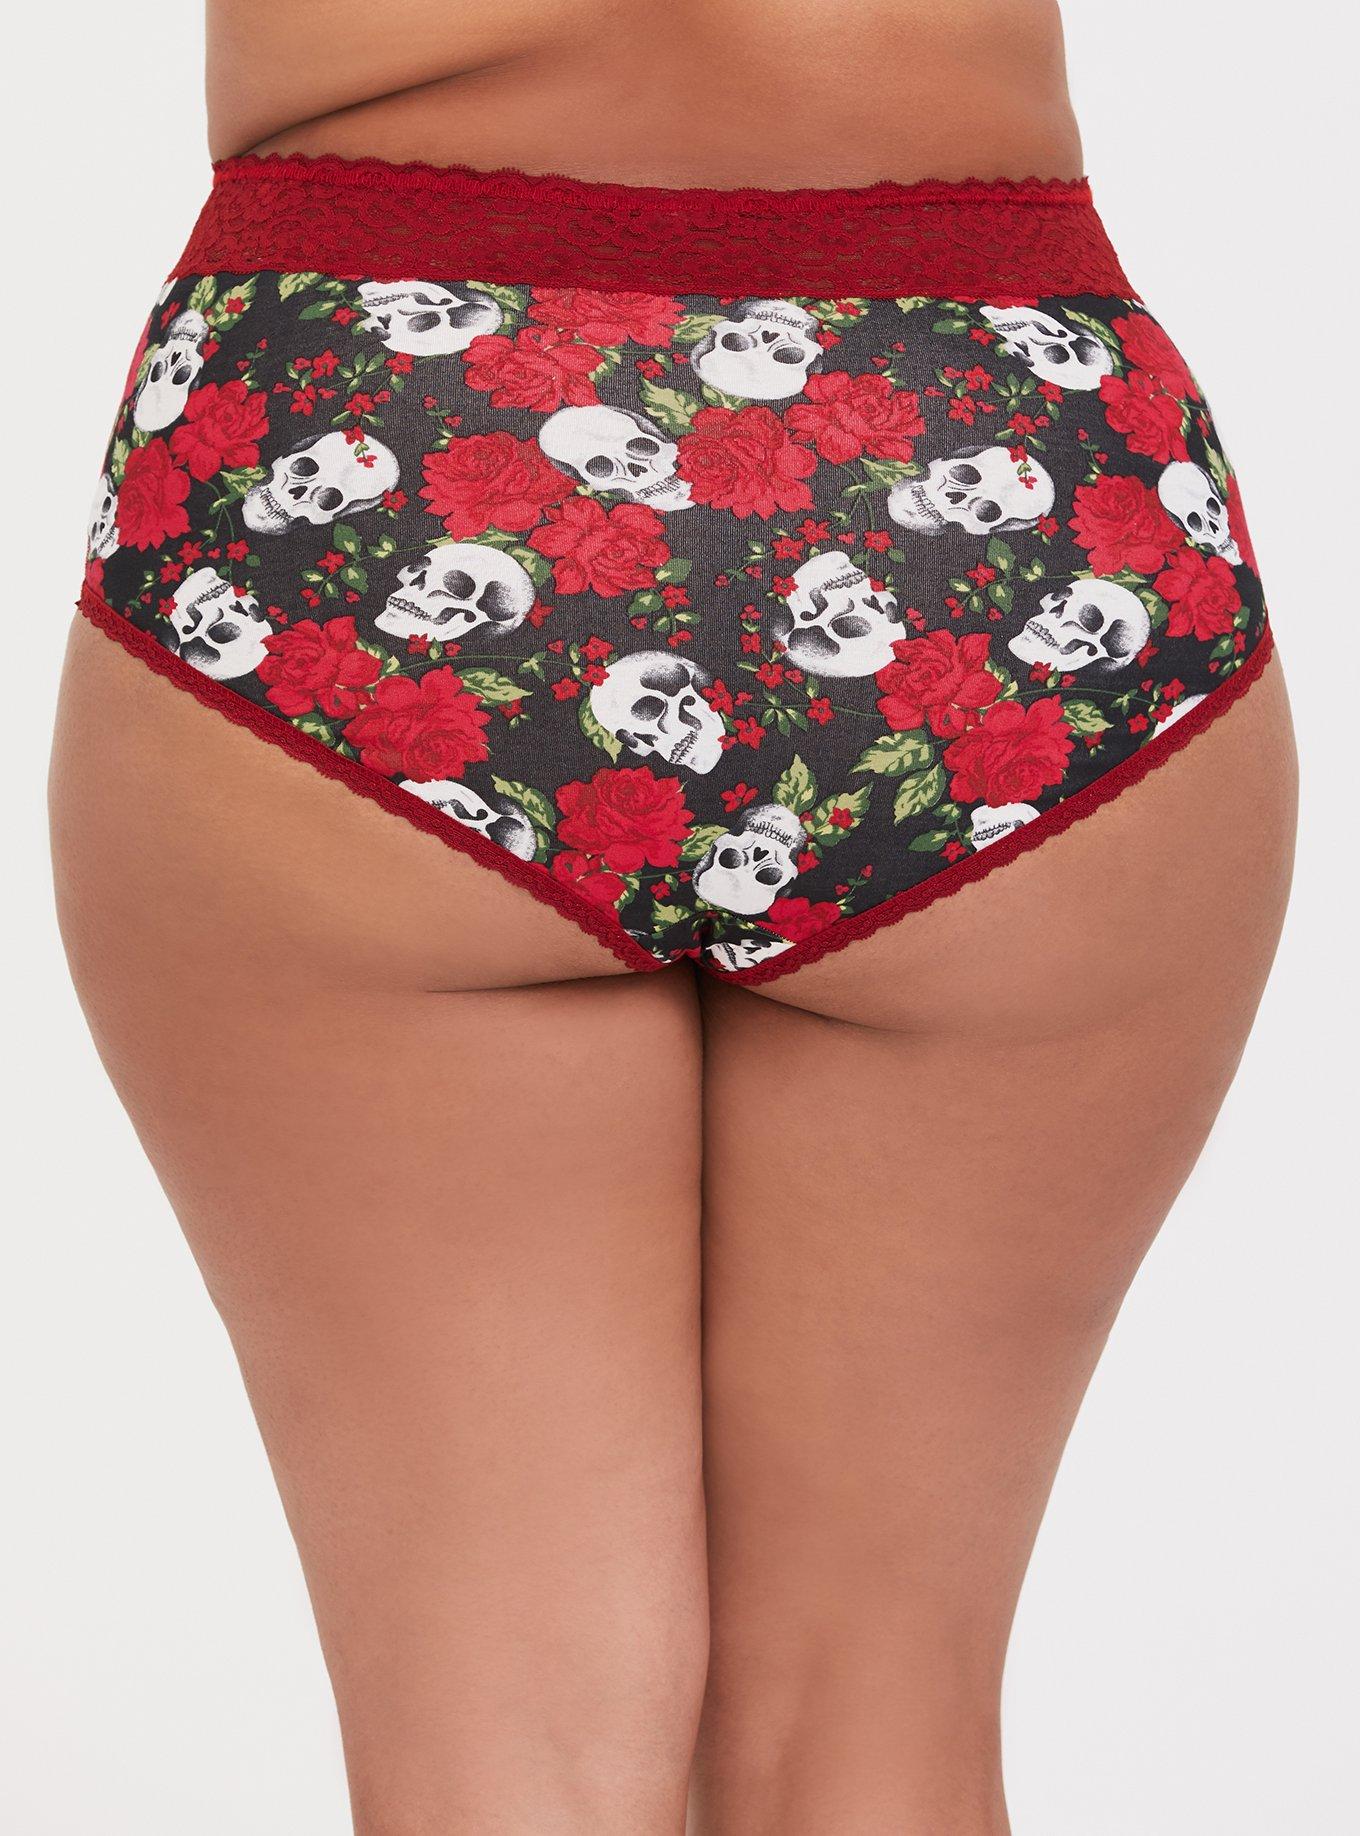 Torrid Cheeky Panties Underwear Floral Wide Lace Skulls Plus Size 6 30